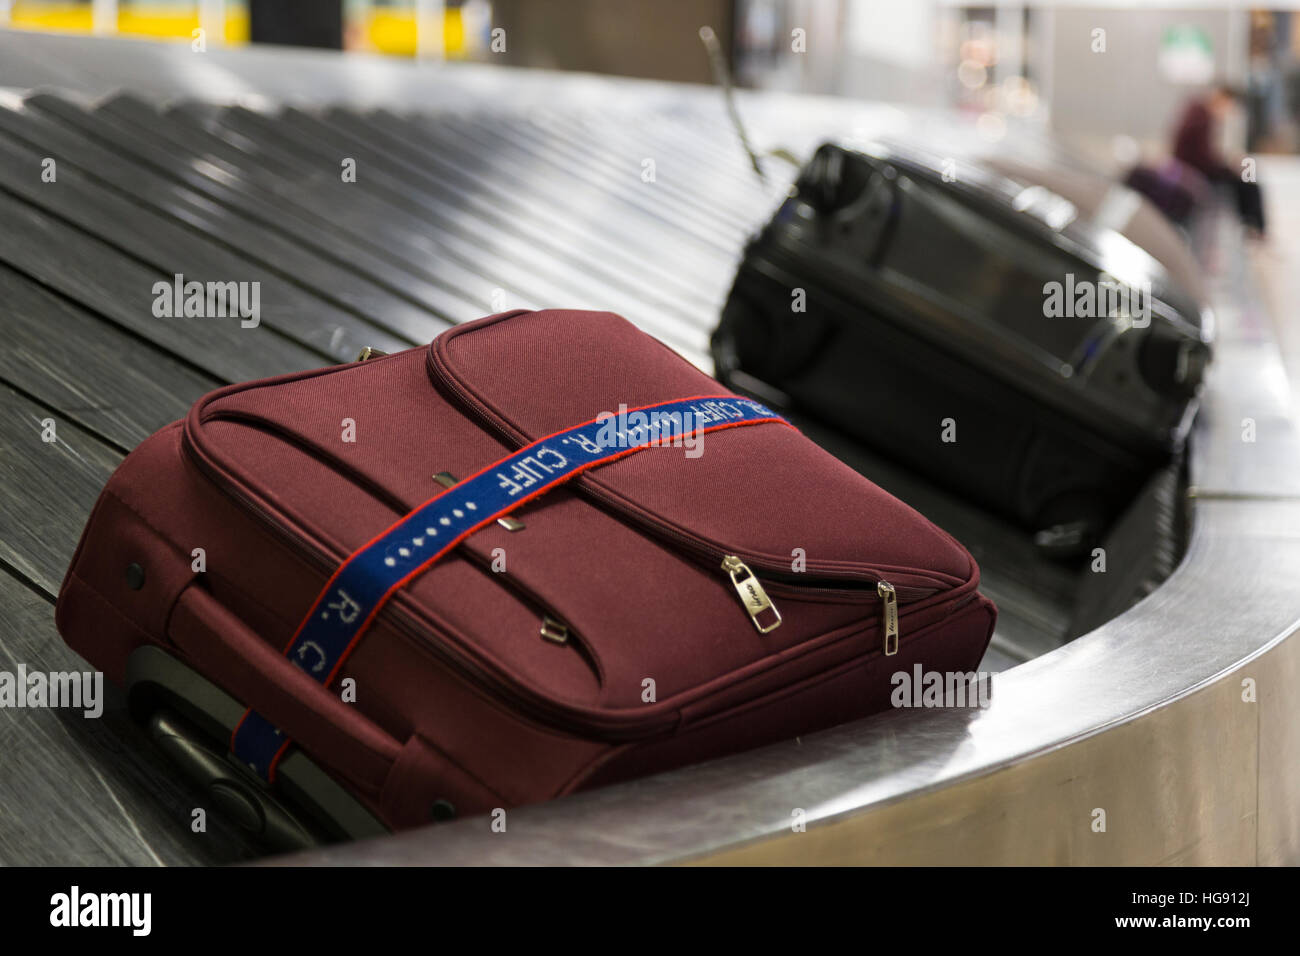 Fällen / case / Gepäck / Taschen / Beutel auf Rückforderung Karussell  Koffergurt am Flughafen Genf / Genève Aéroport. Schweiz Stockfotografie -  Alamy